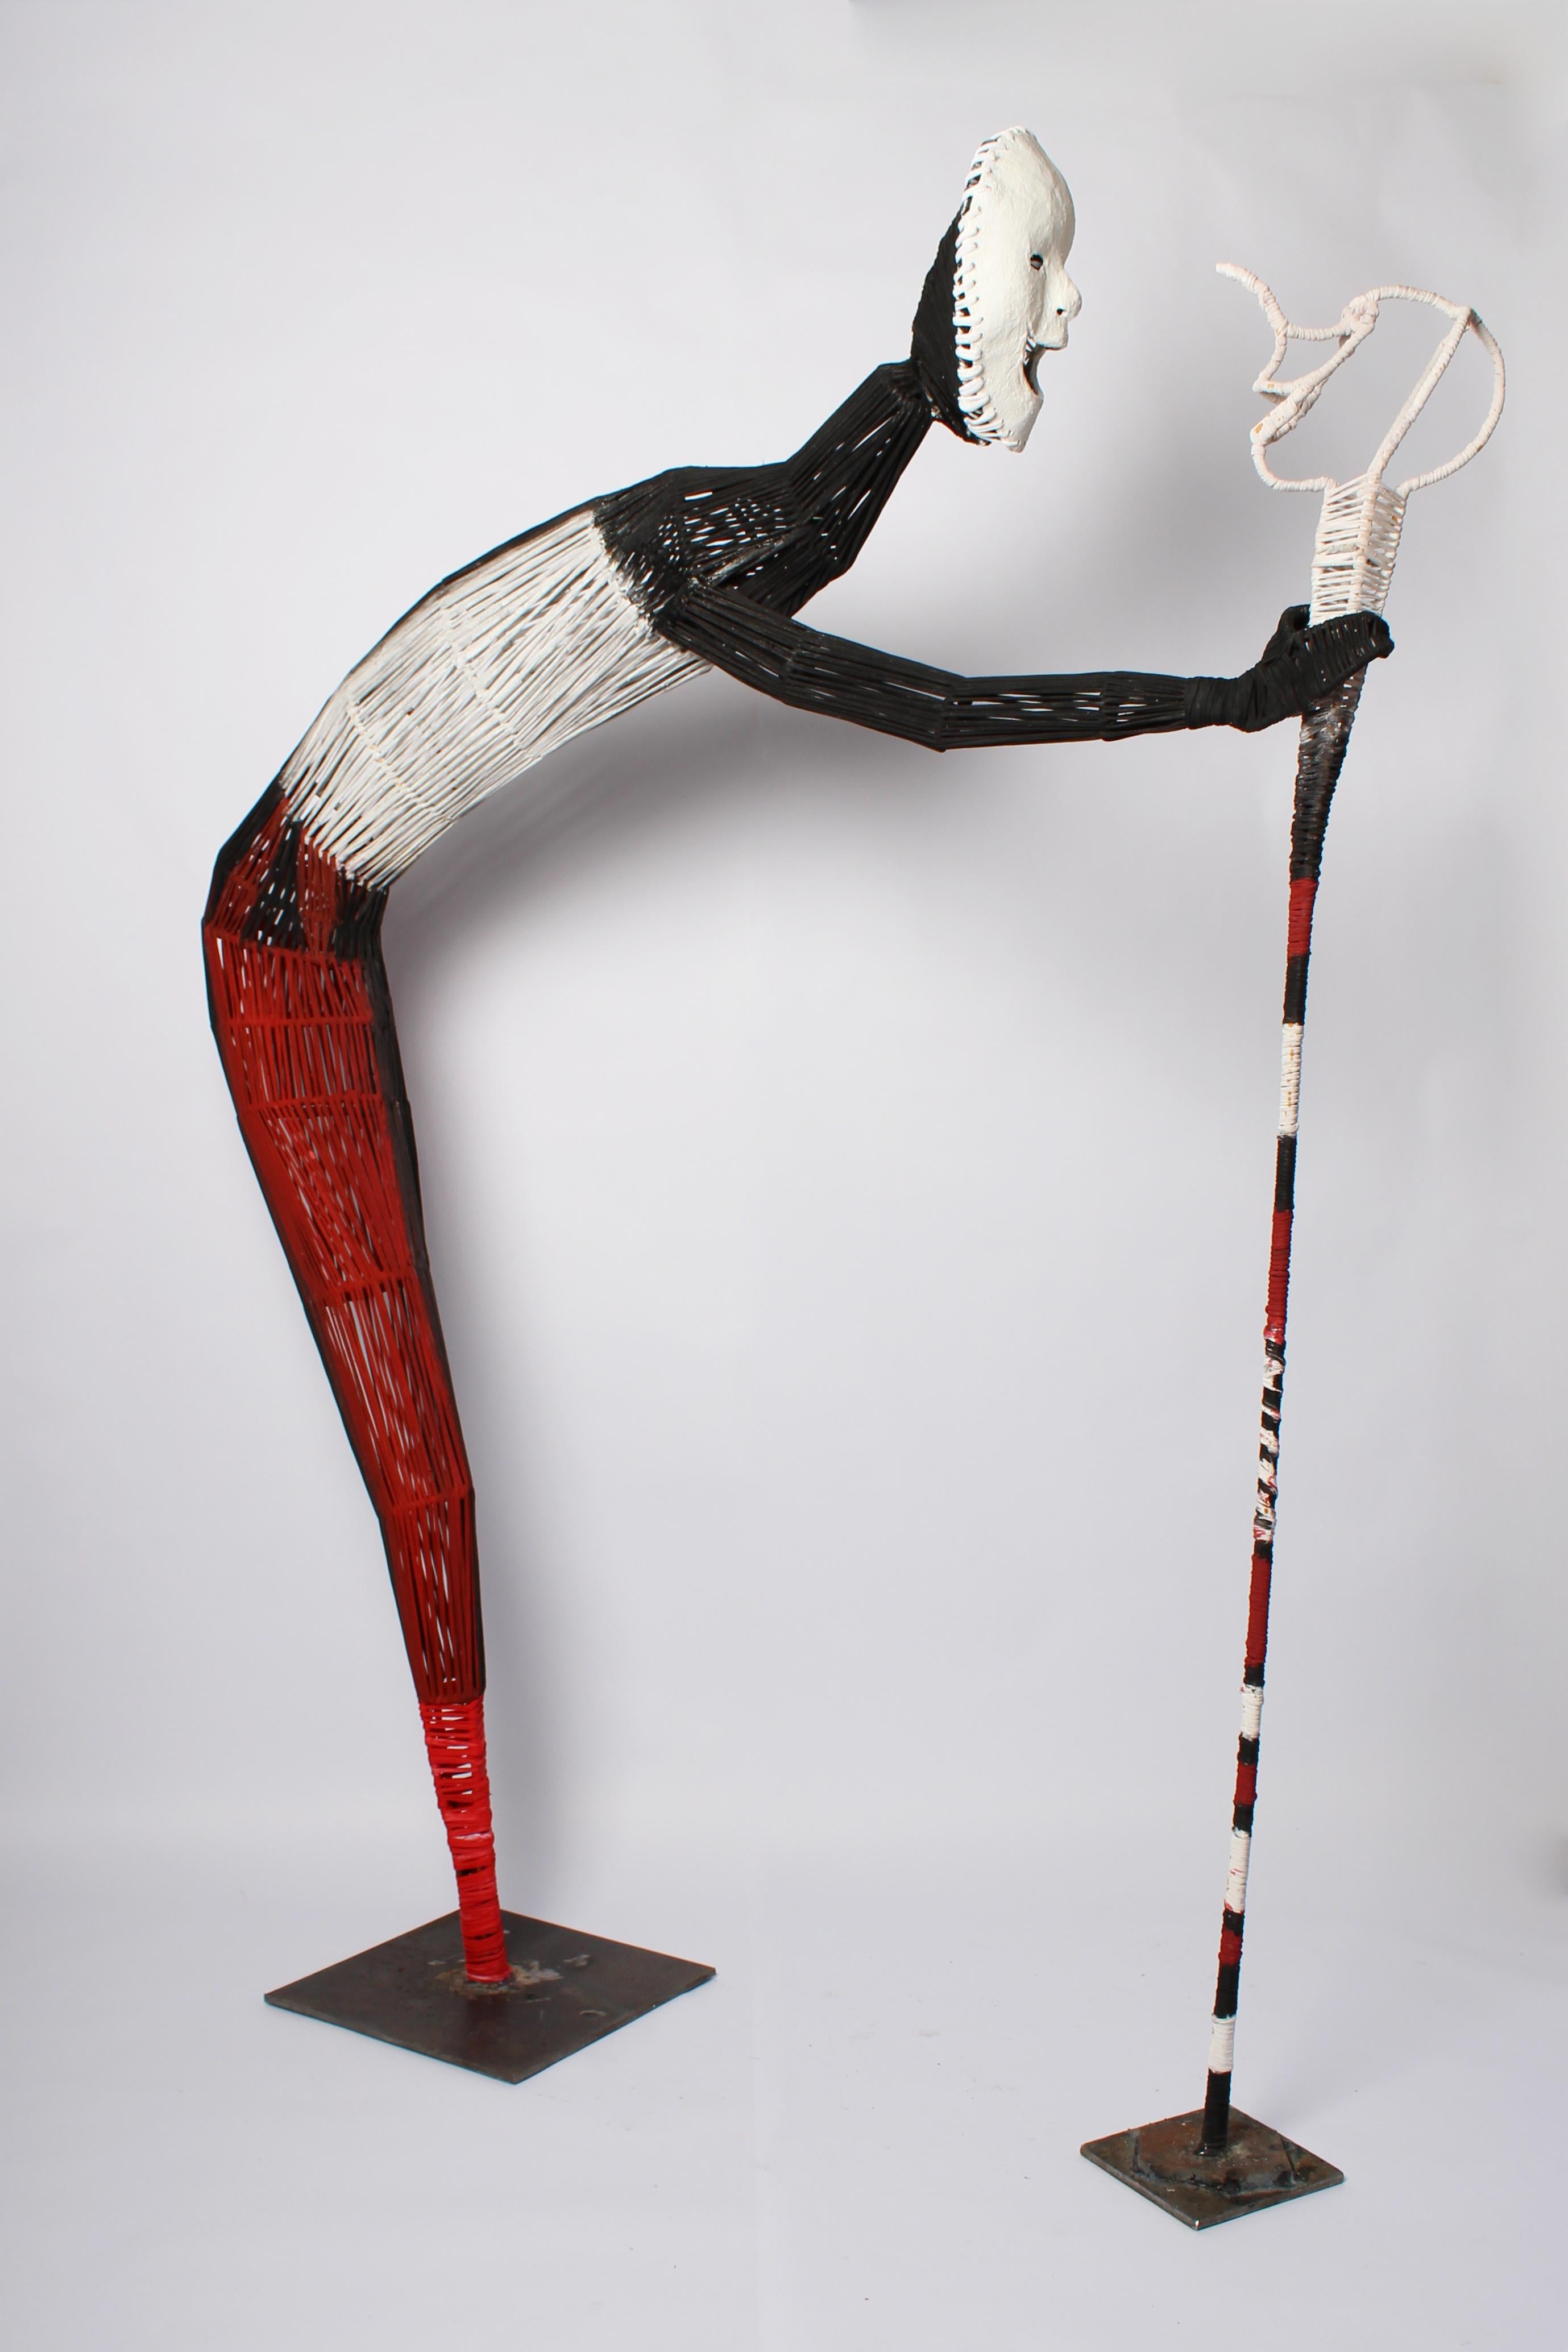 Der Spazierstock, Elisia Nghidishange, Skulptur in Mischtechnik